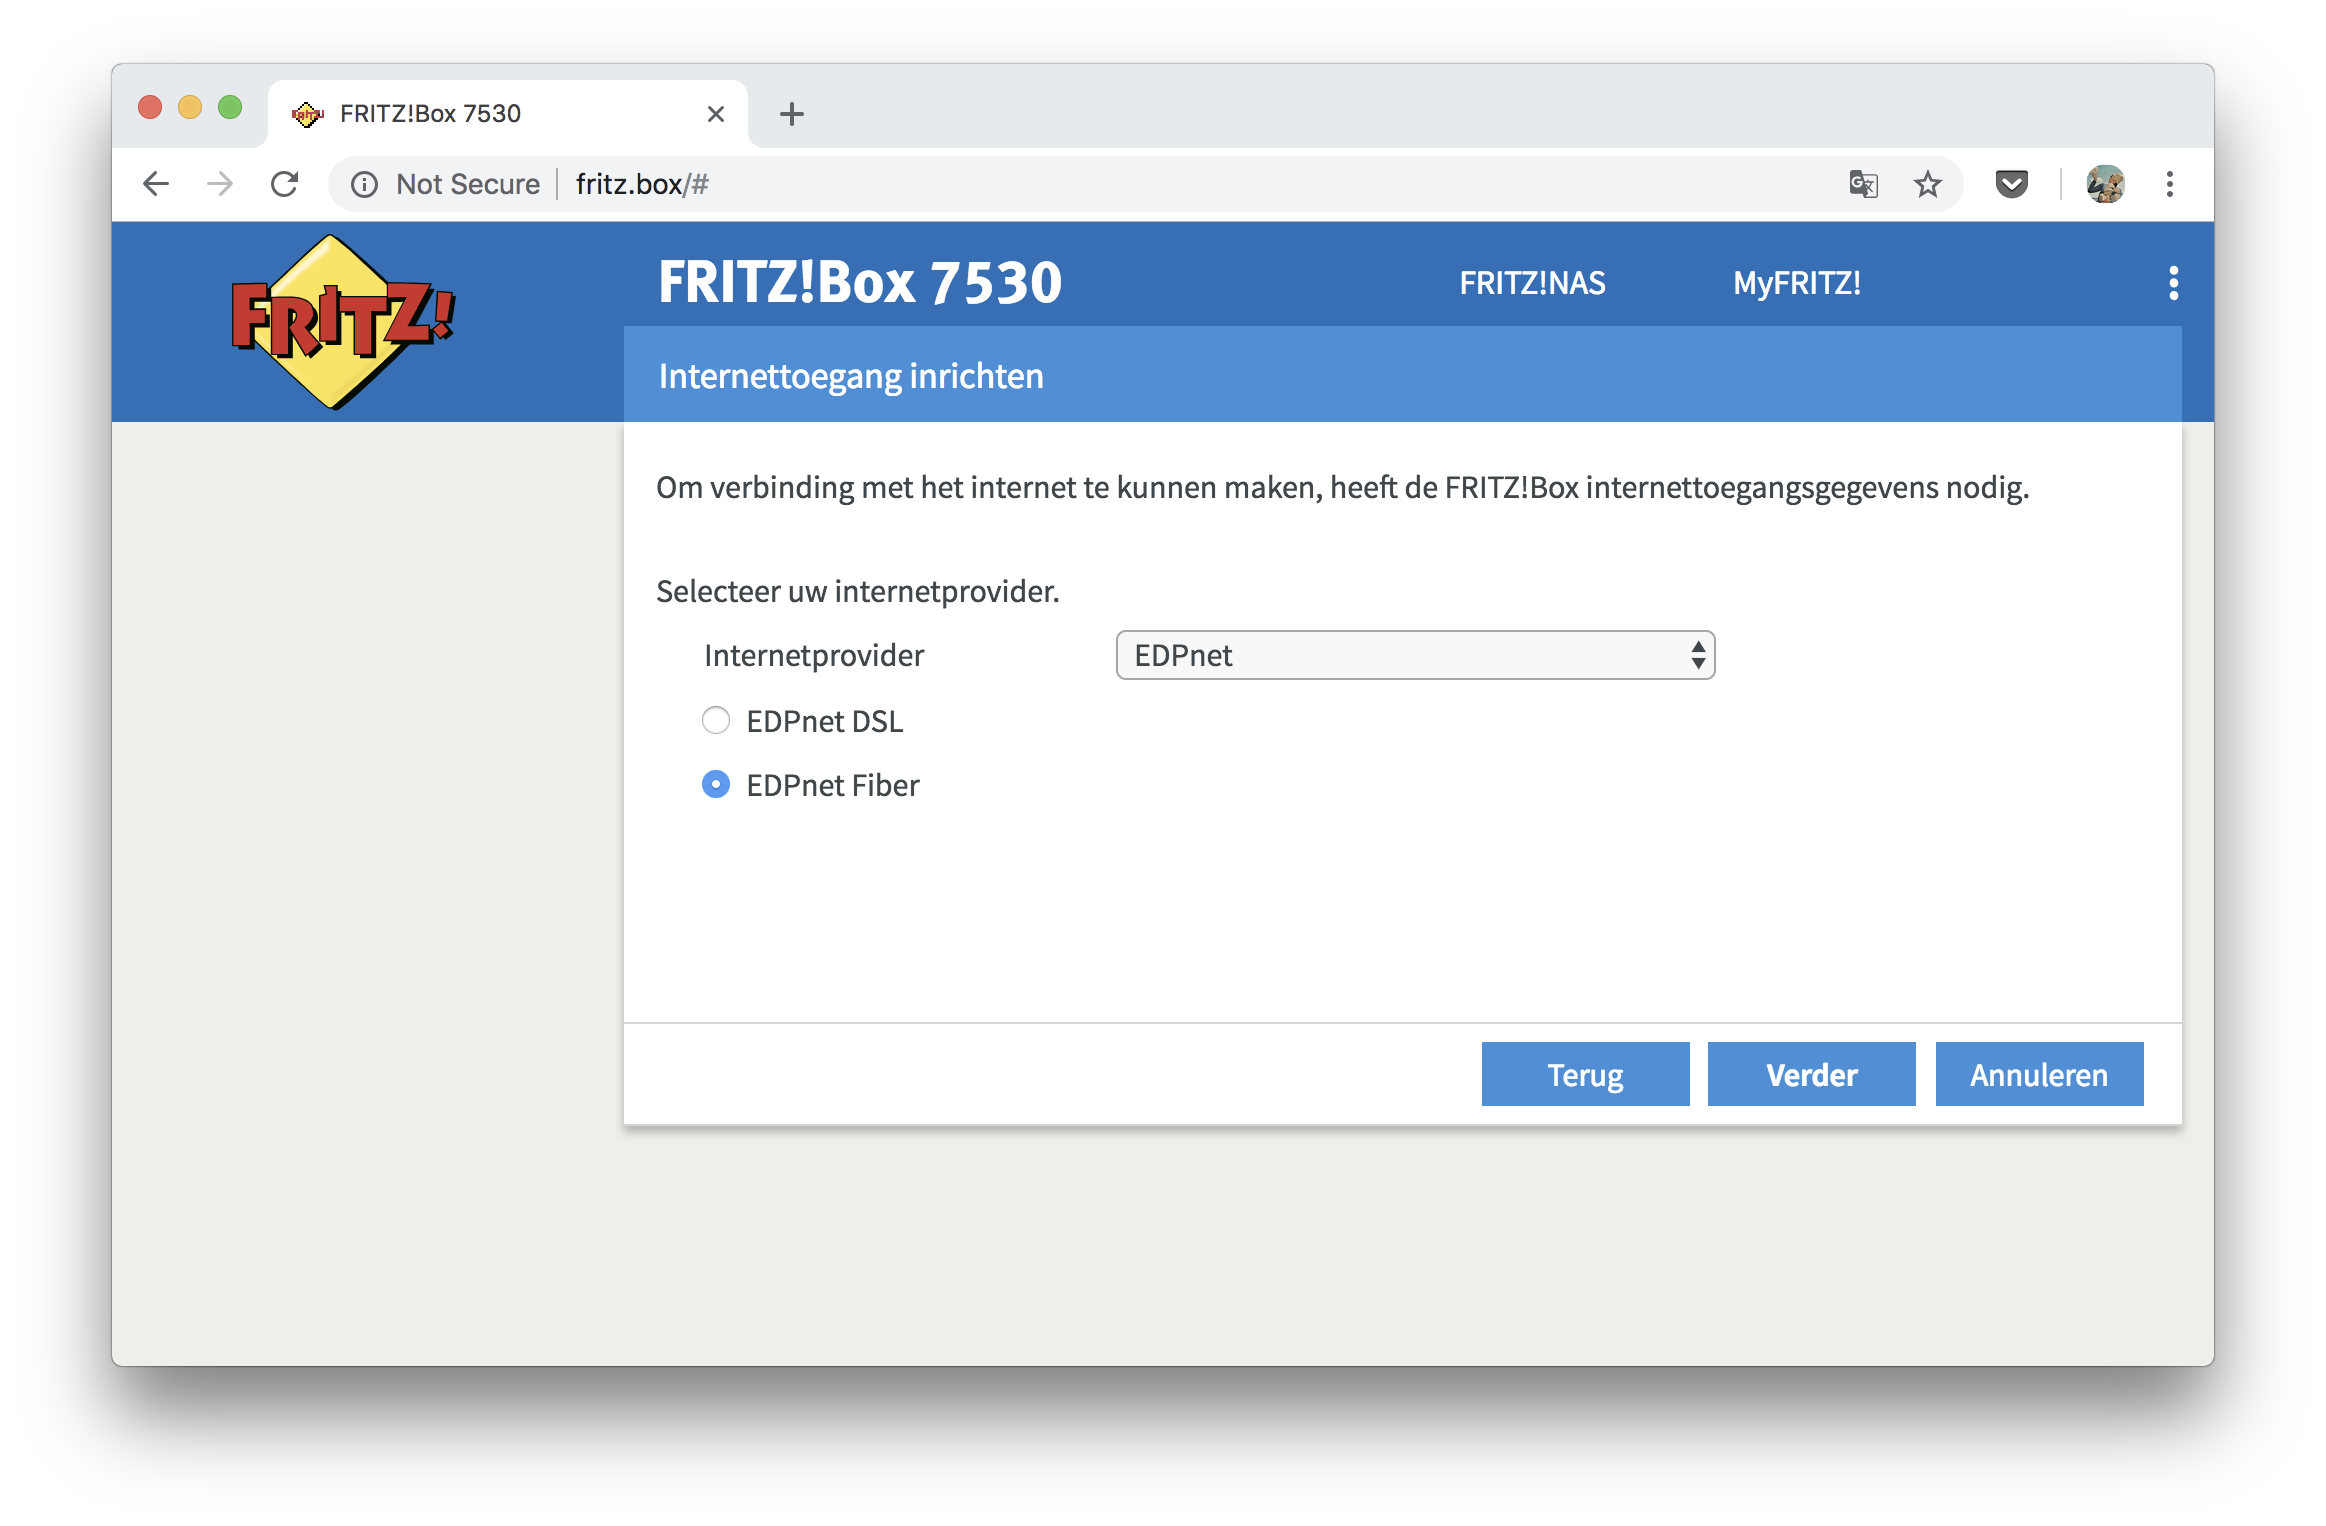 Hoe kan ik mijn FRITZ!Box 7530 installeren en configureren voor mijn fiber-verbinding